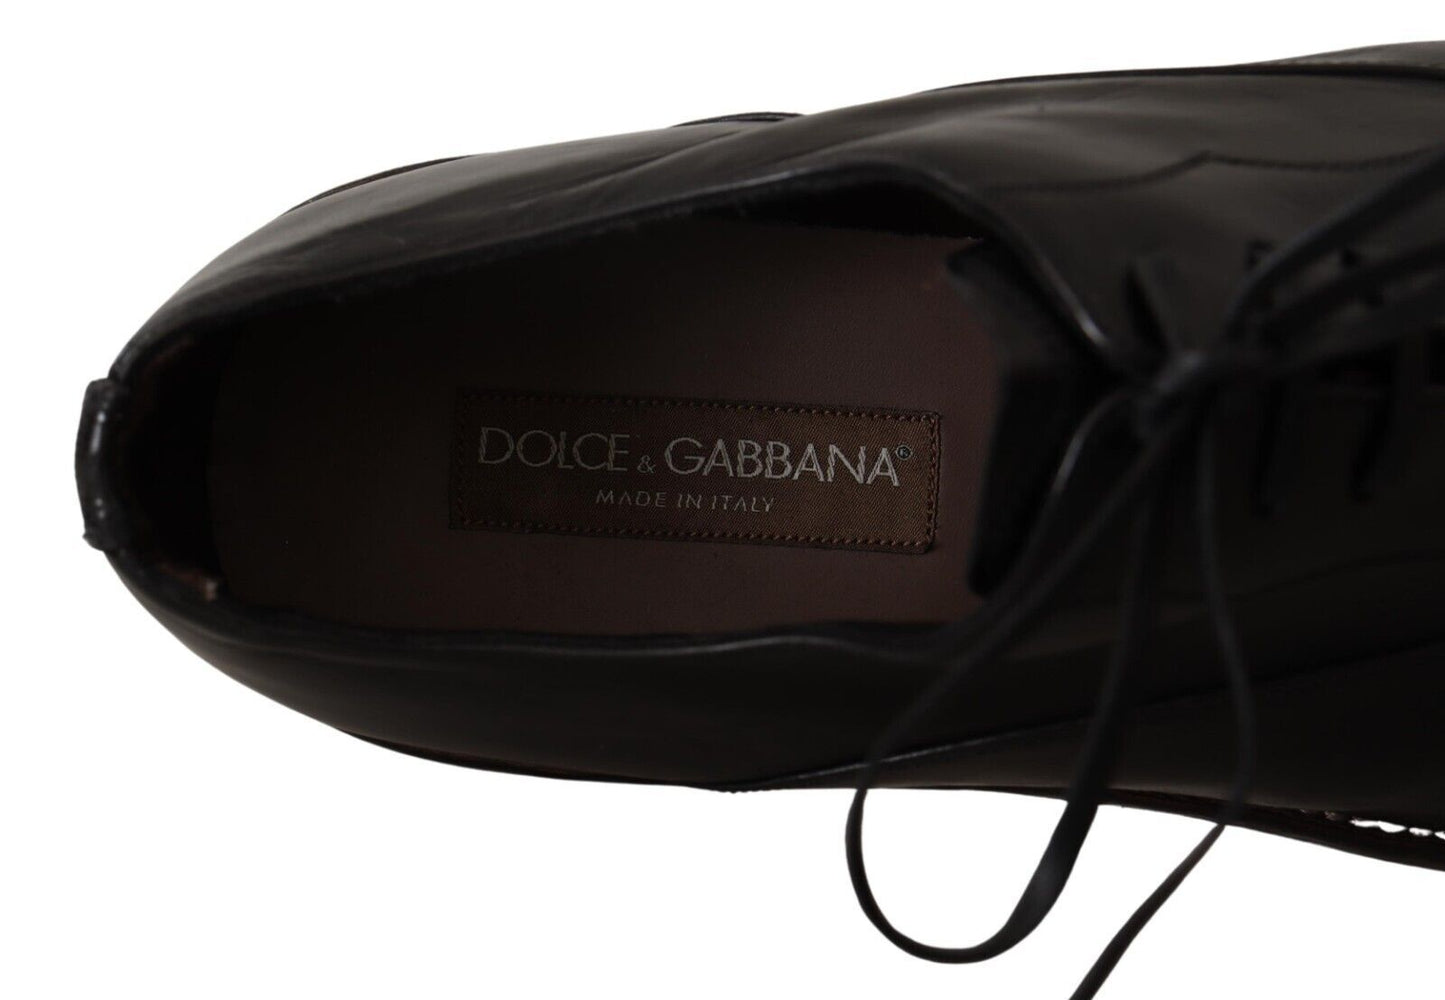 Dolce & Gabbana schwarze Ledermenschen Schnürung Derby Schuhe